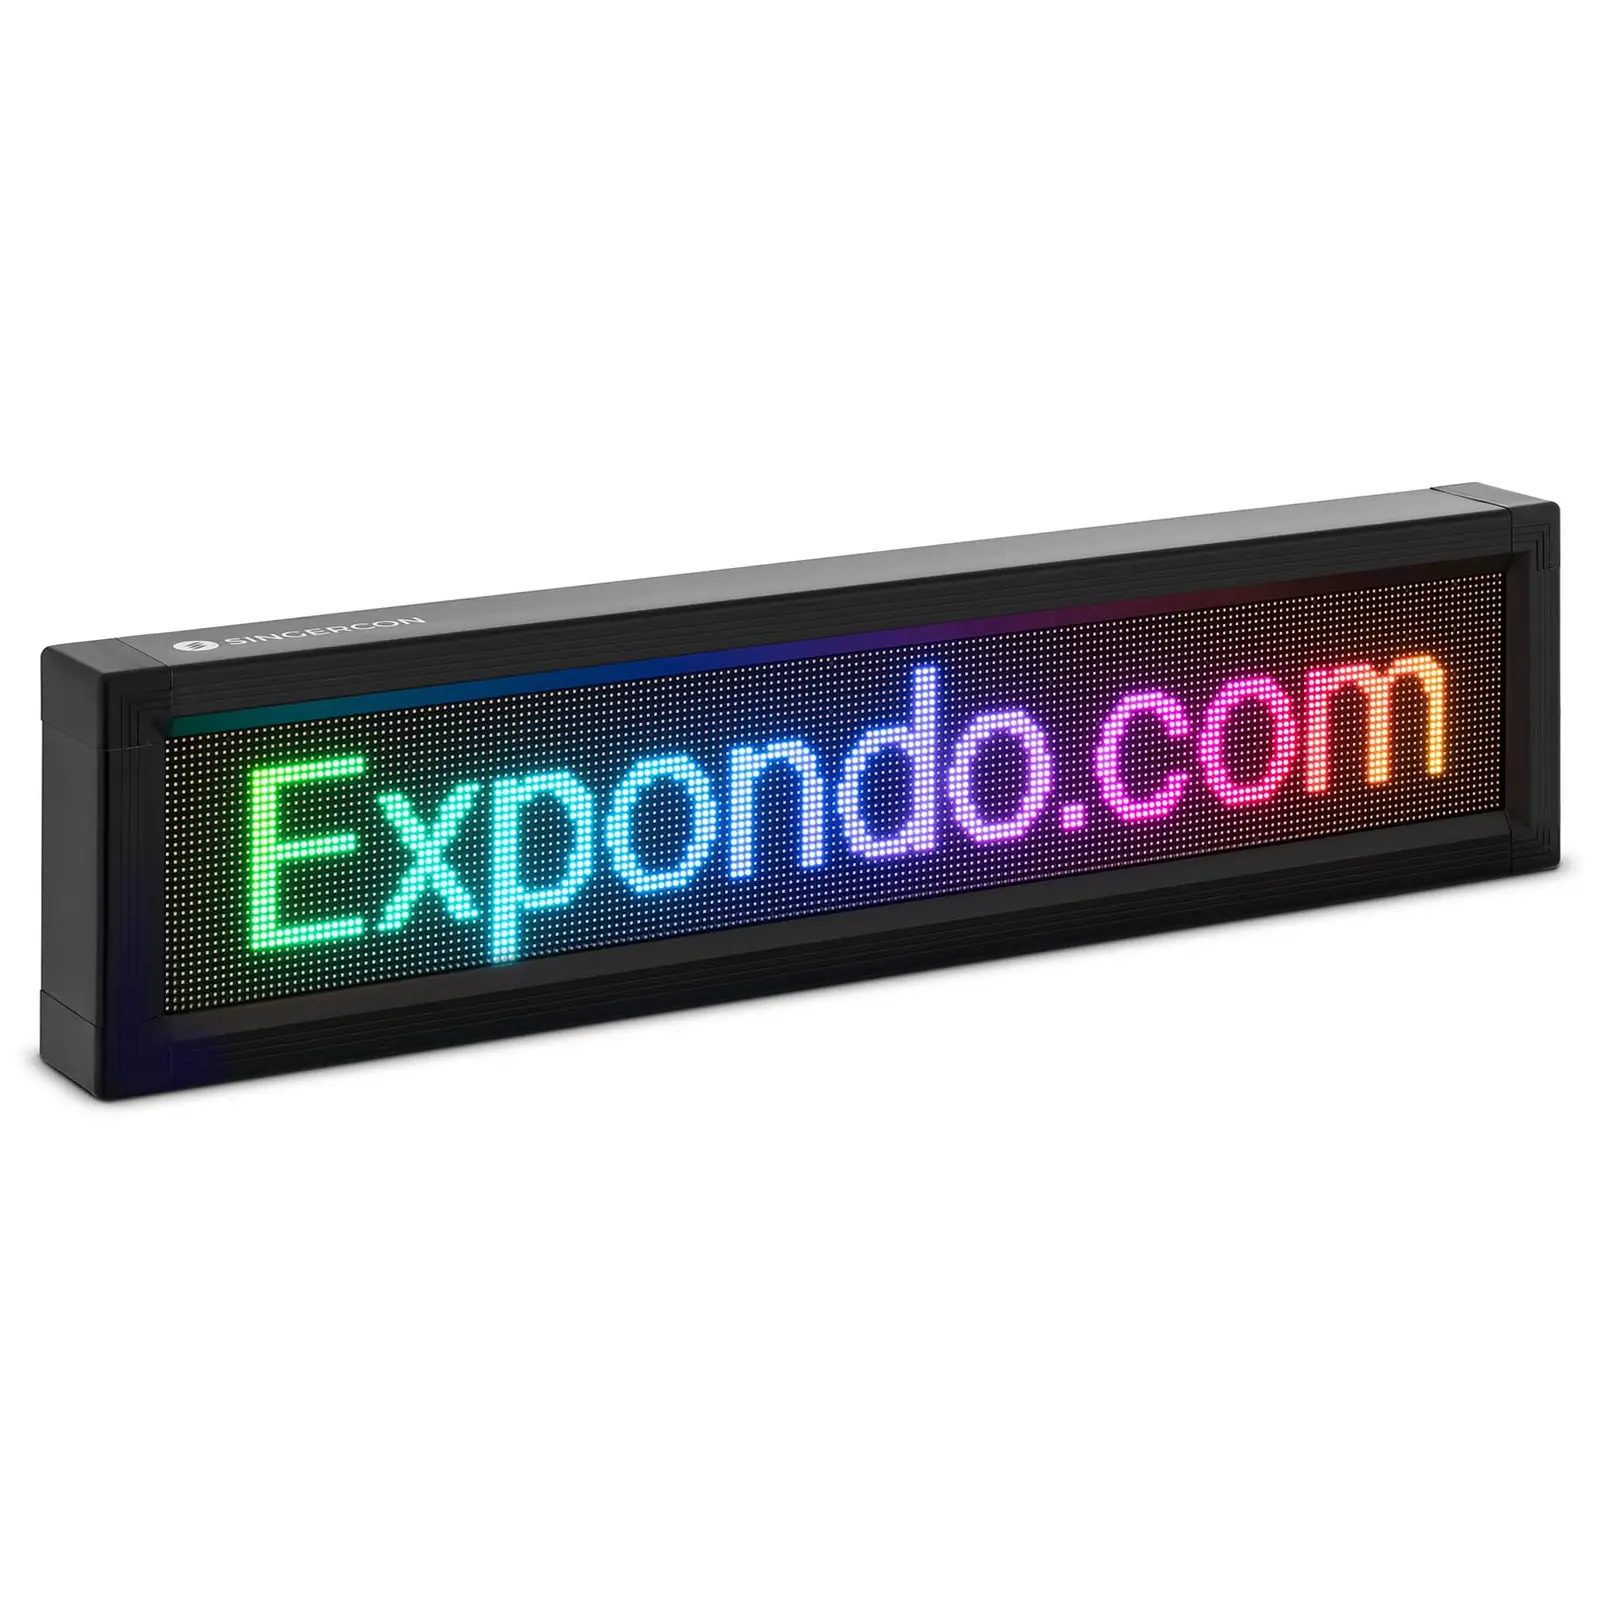 Panneau publicitaire LED - 192 x 32 LED couleur - 105 x 25 cm - Programmable via iOS / Android